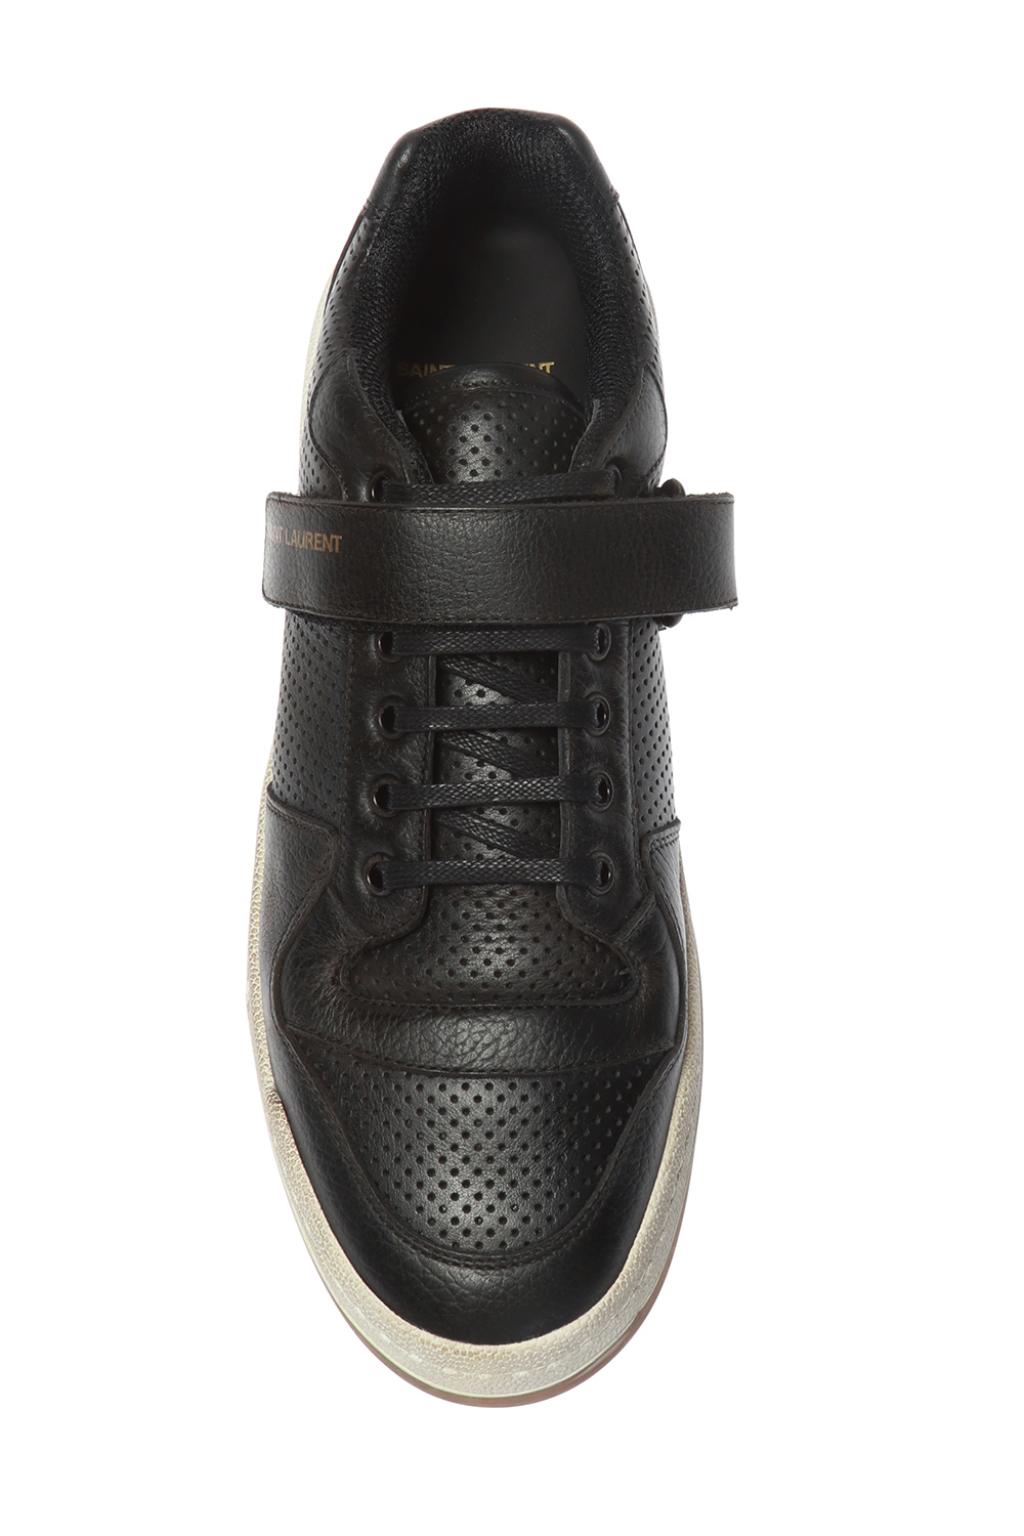 Saint Laurent 'SL24' used-look sneakers | Men's Shoes | Vitkac